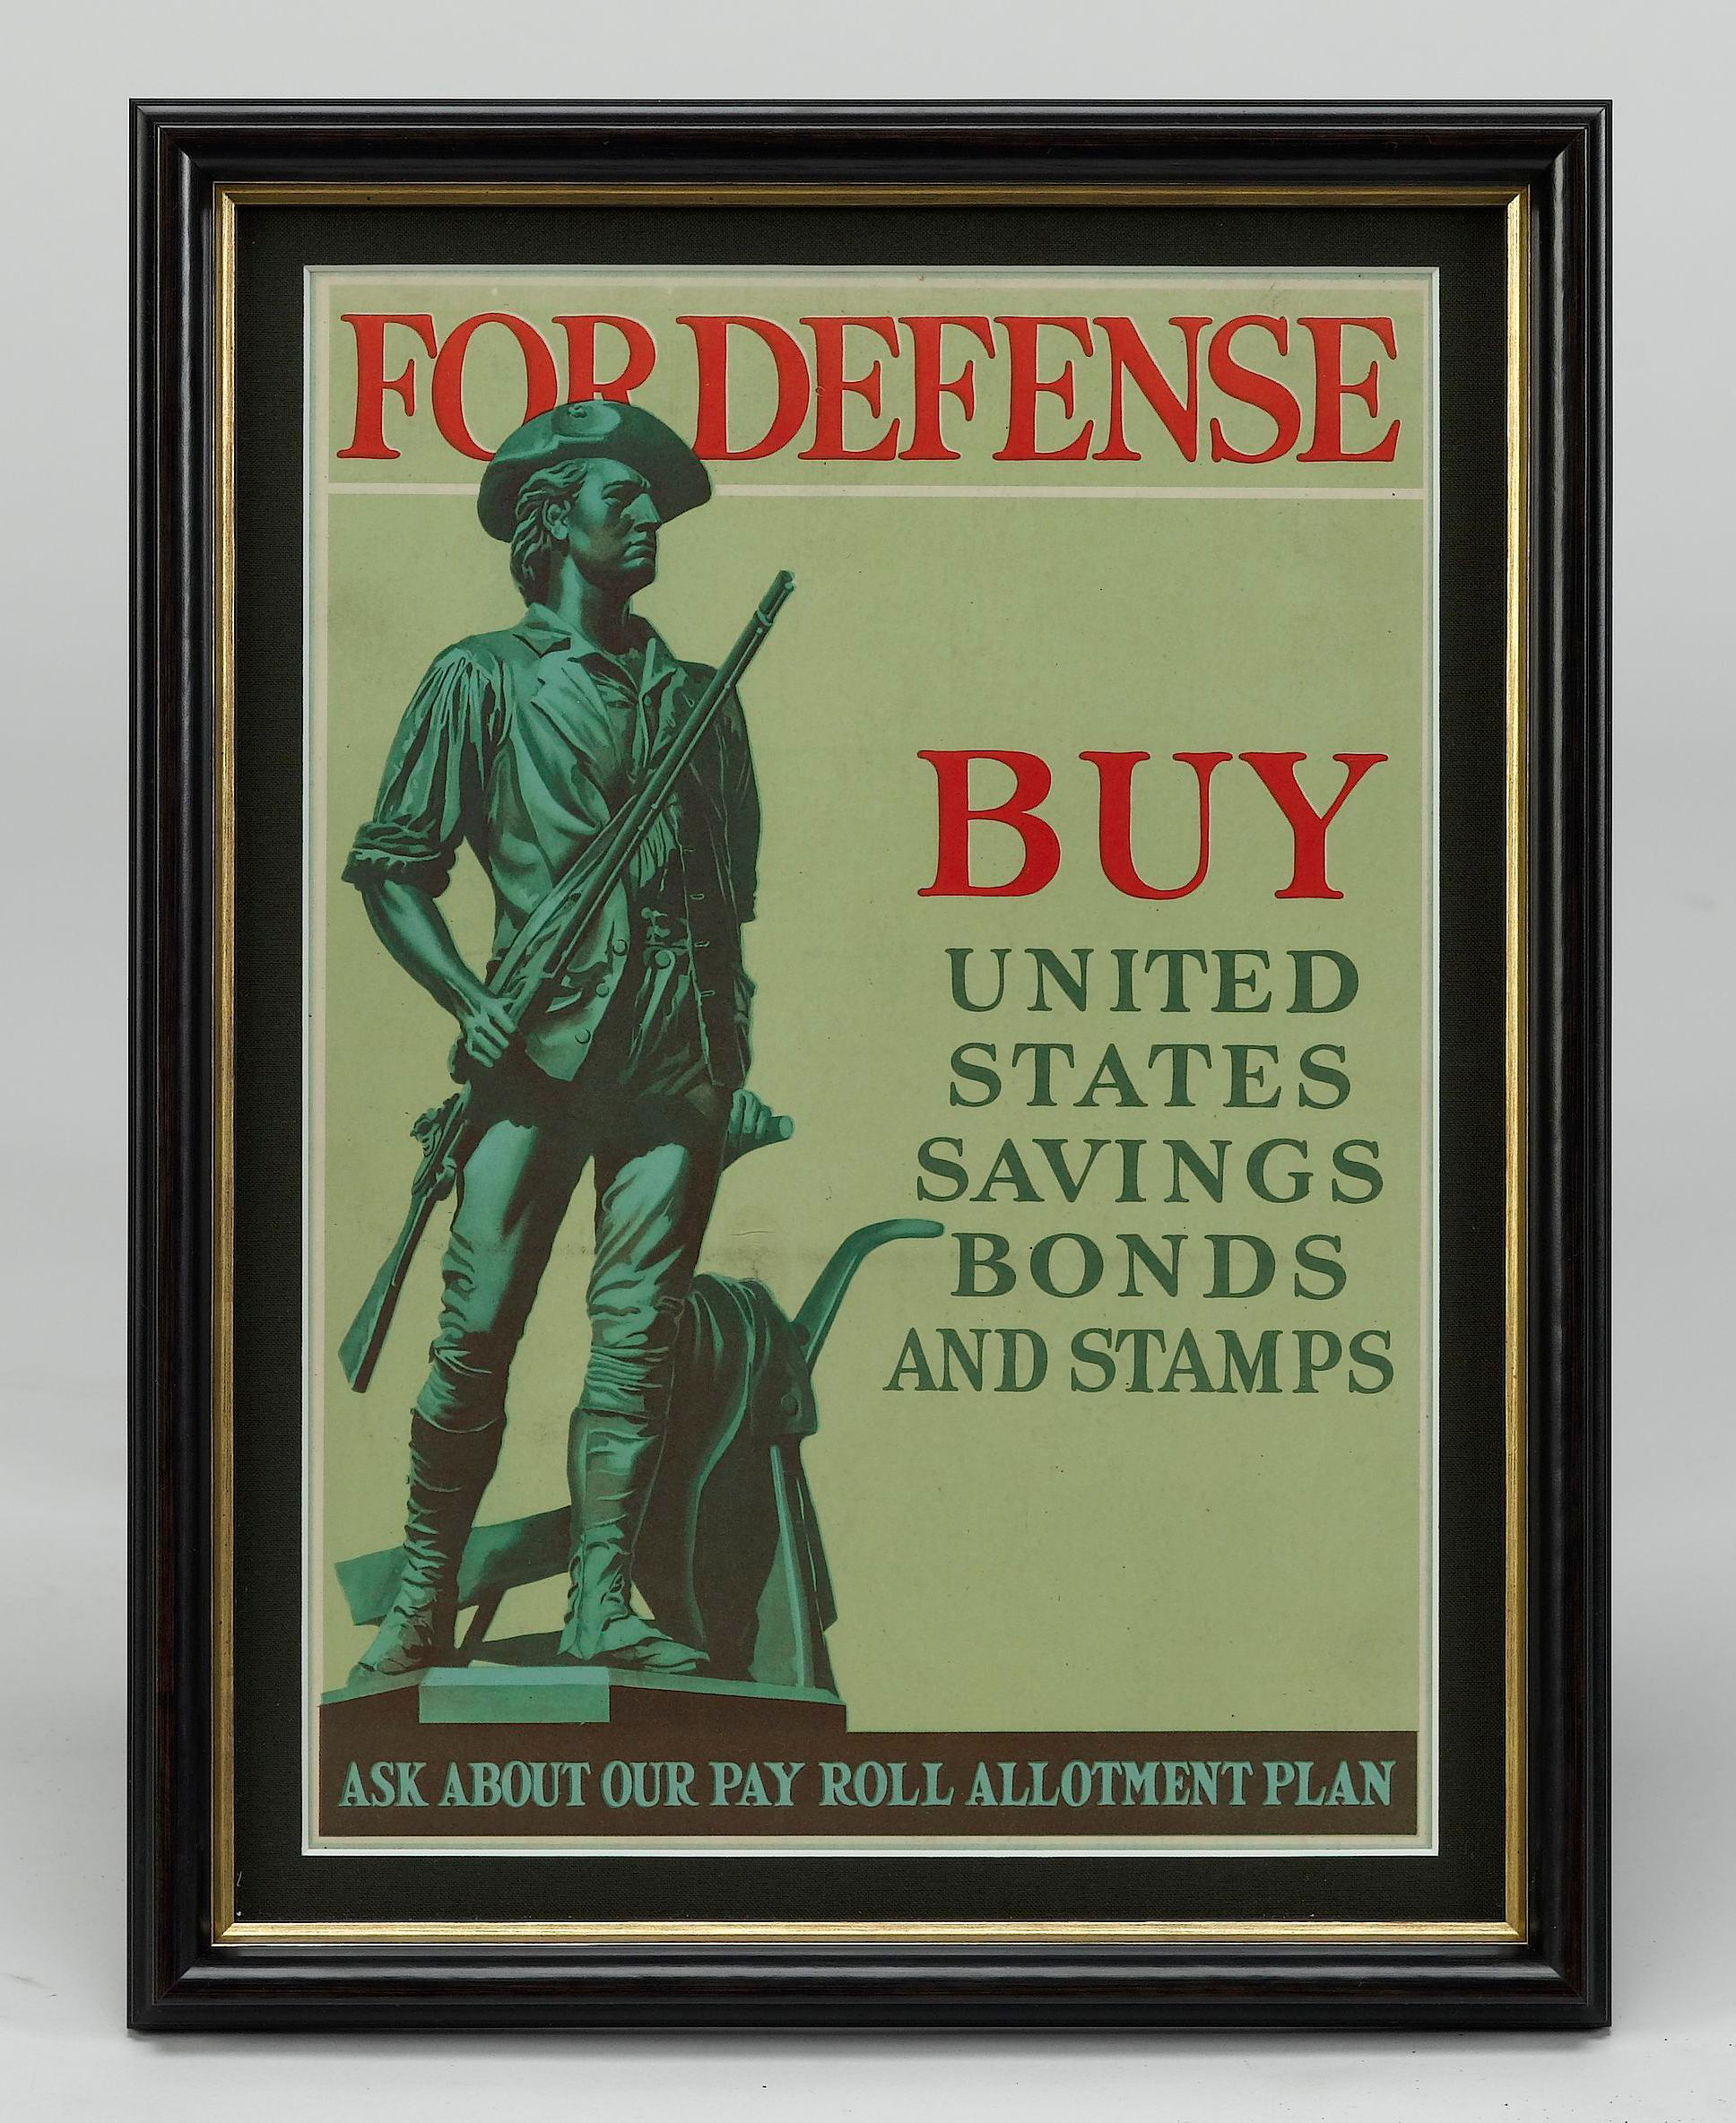 Il s'agit d'une affiche de bons d'épargne de la Seconde Guerre mondiale, datant de 1941. L'affiche indique 